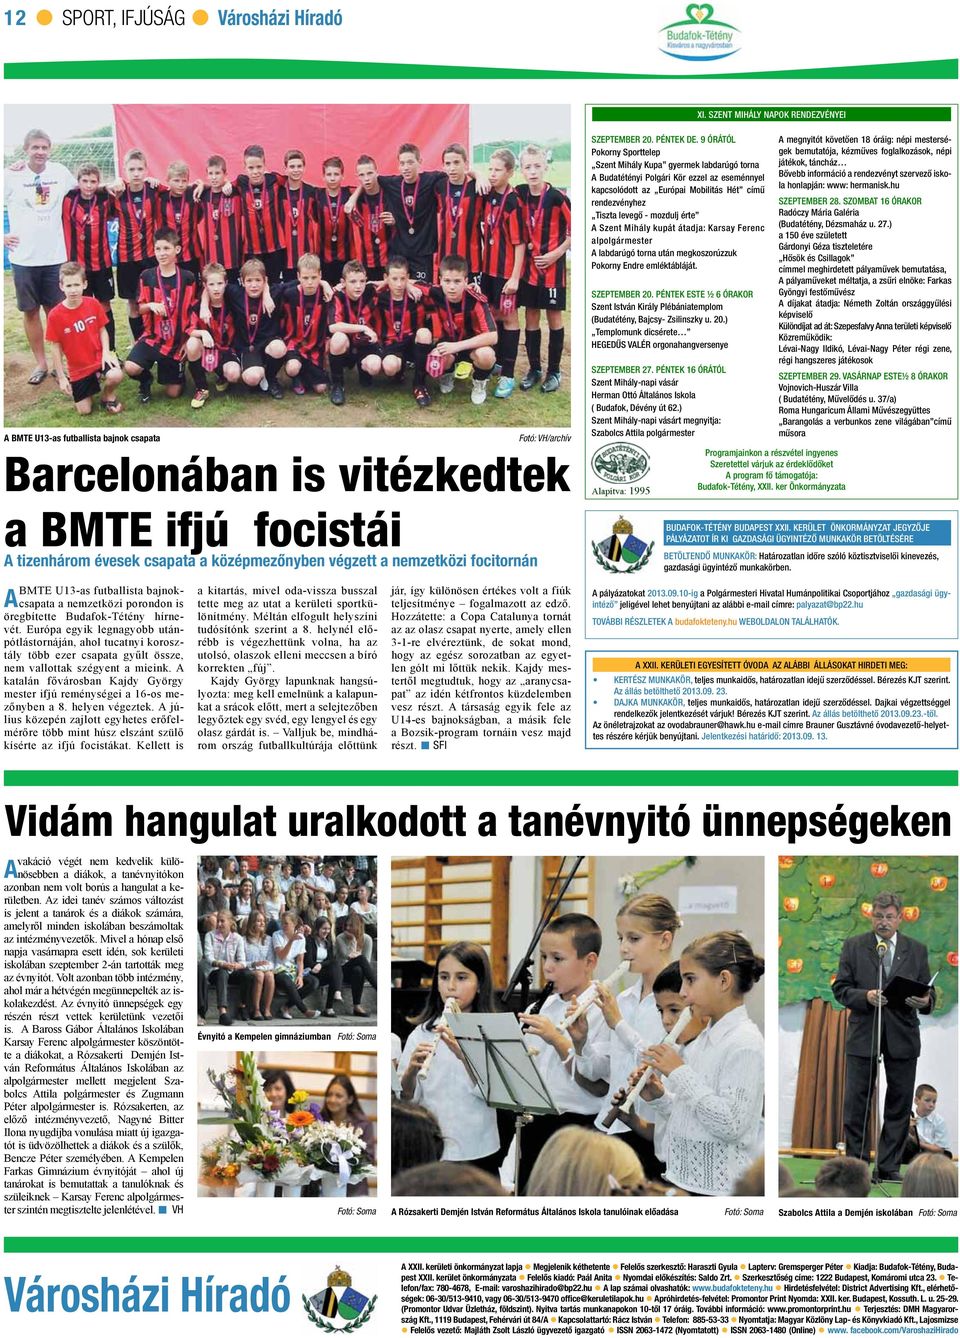 BMTE U13-as futballista bajnokcsapata a nemzetközi porondon is A öregbítette Budafok-Tétény hírnevét.